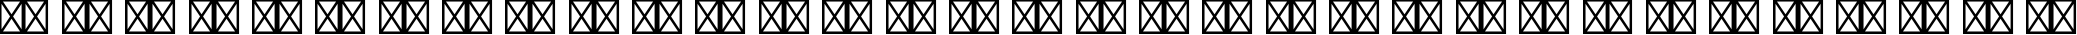 Пример написания русского алфавита шрифтом Adobe Naskh Medium